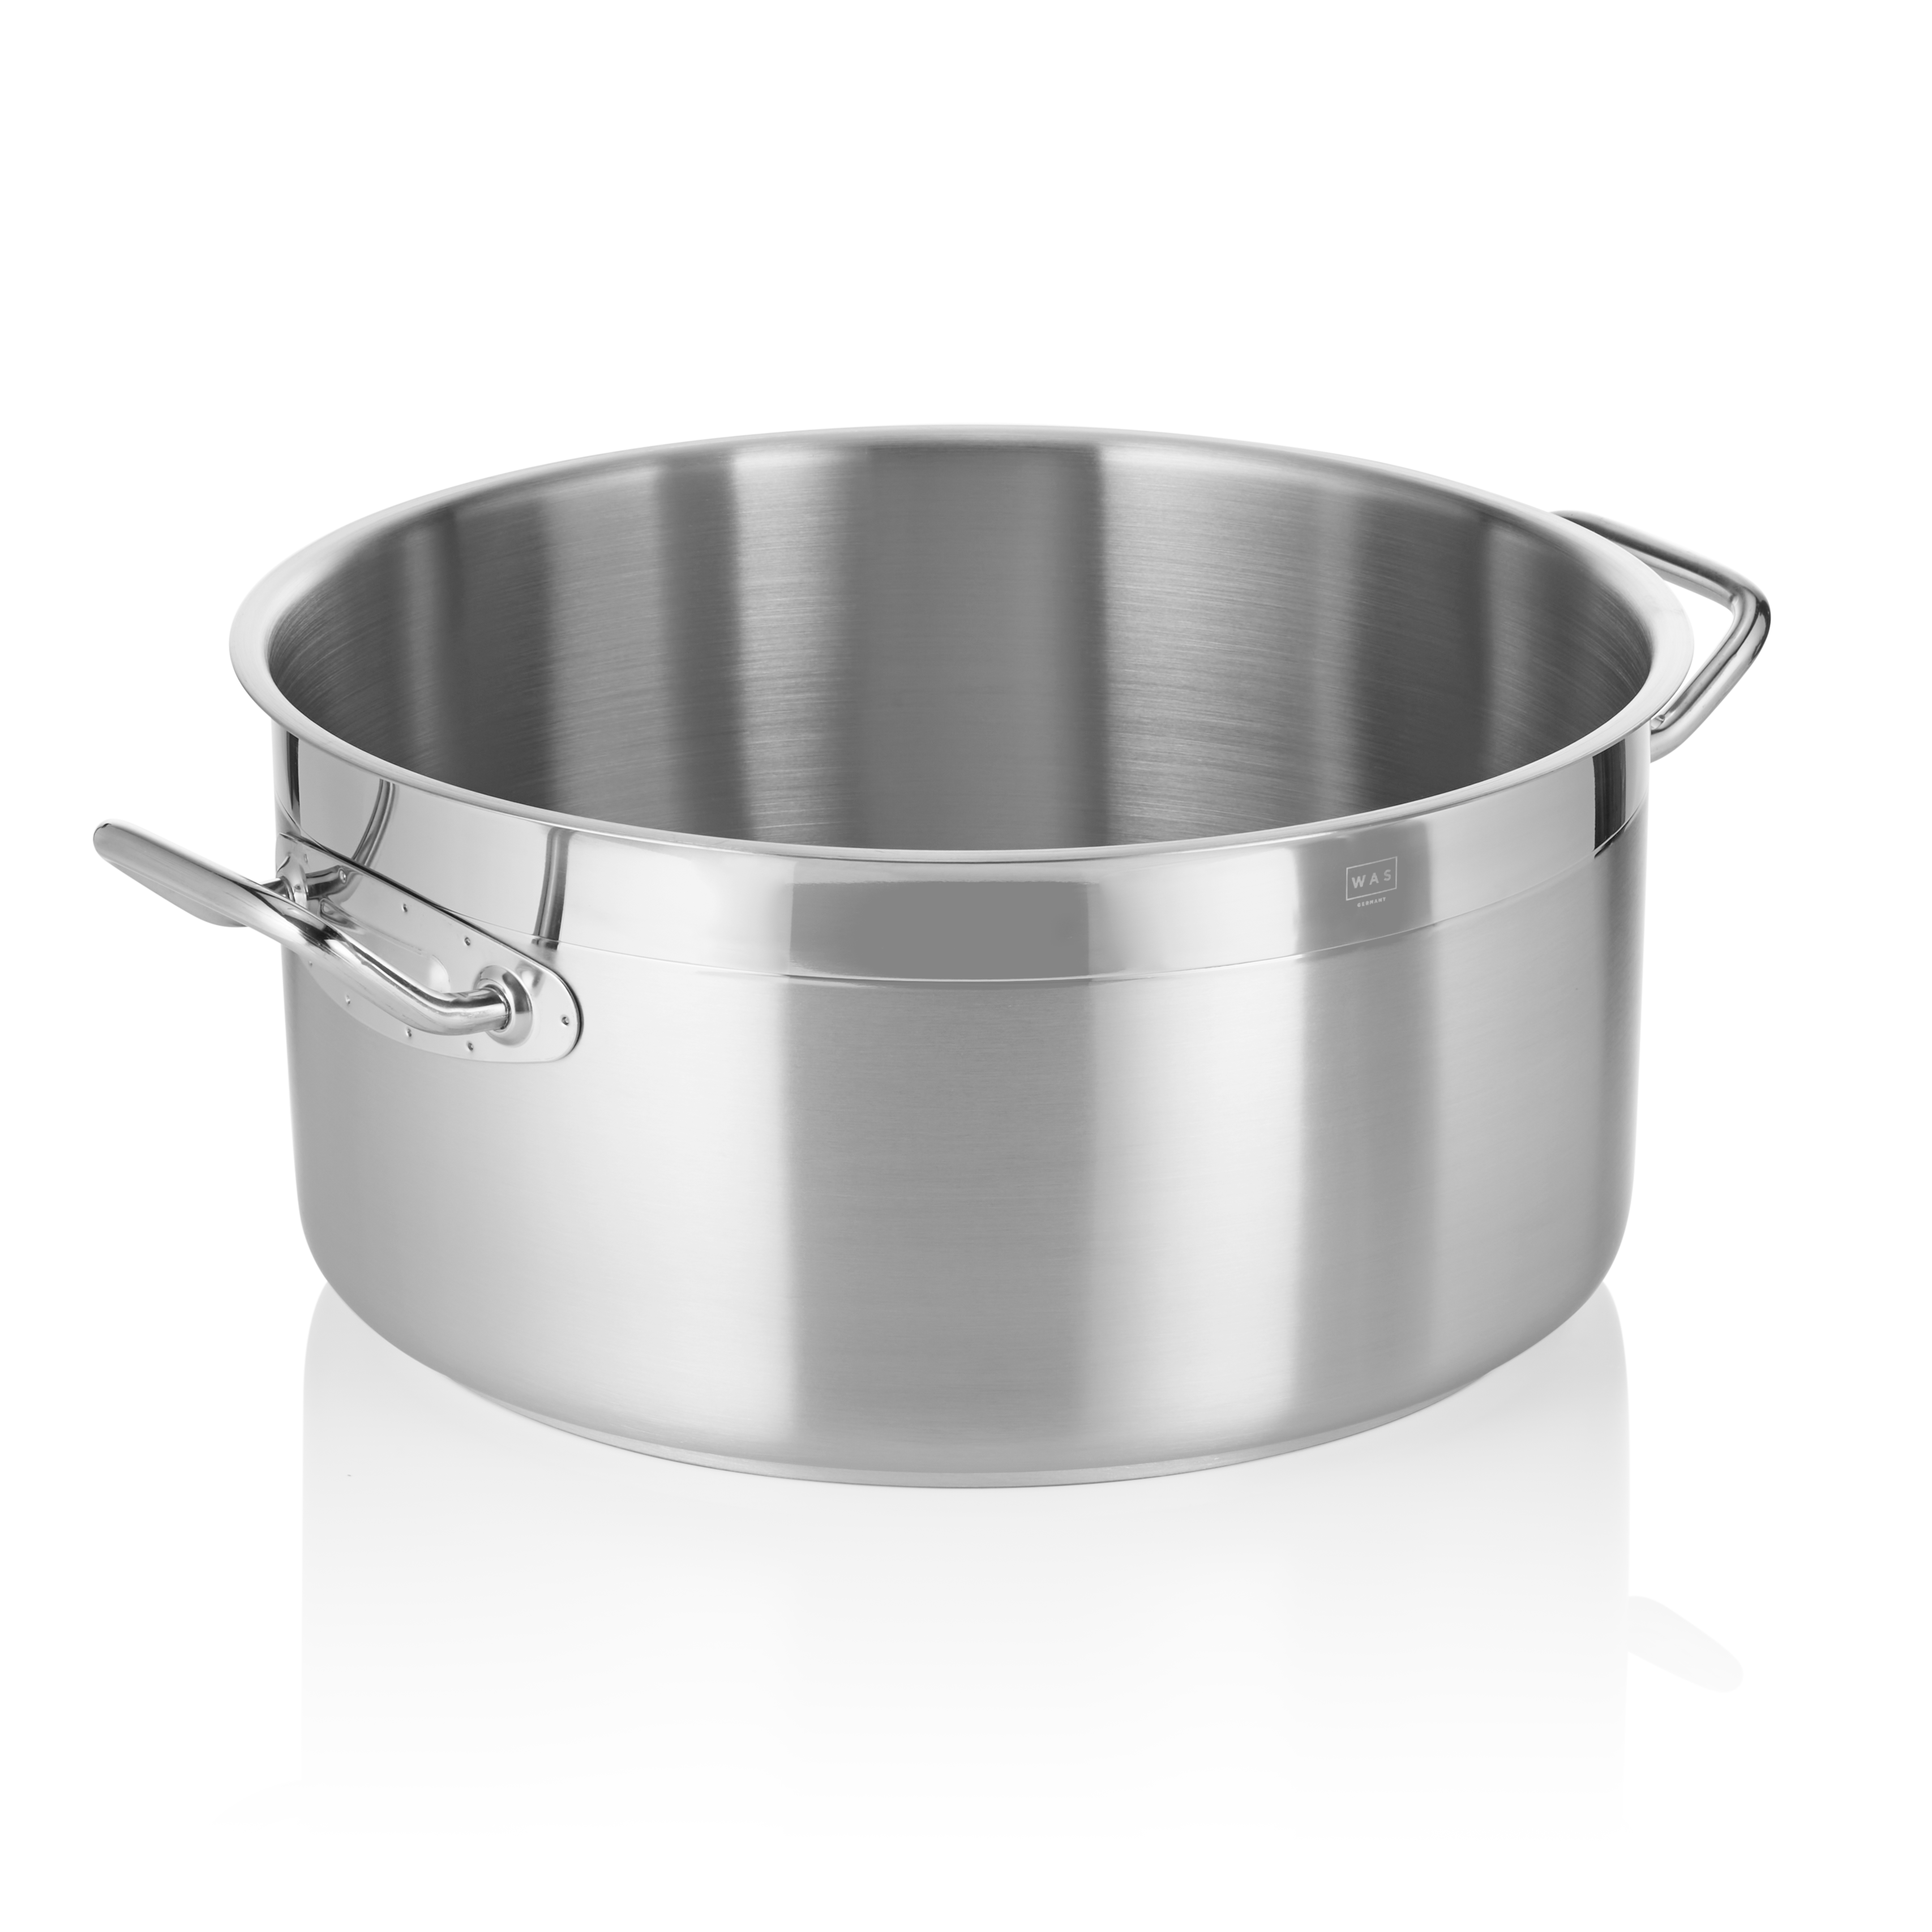 Bratentopf Cookware 21, Ø 40 cm, 24,0 Liter - Höhe 19,5 cm - Edelstahl 18/10